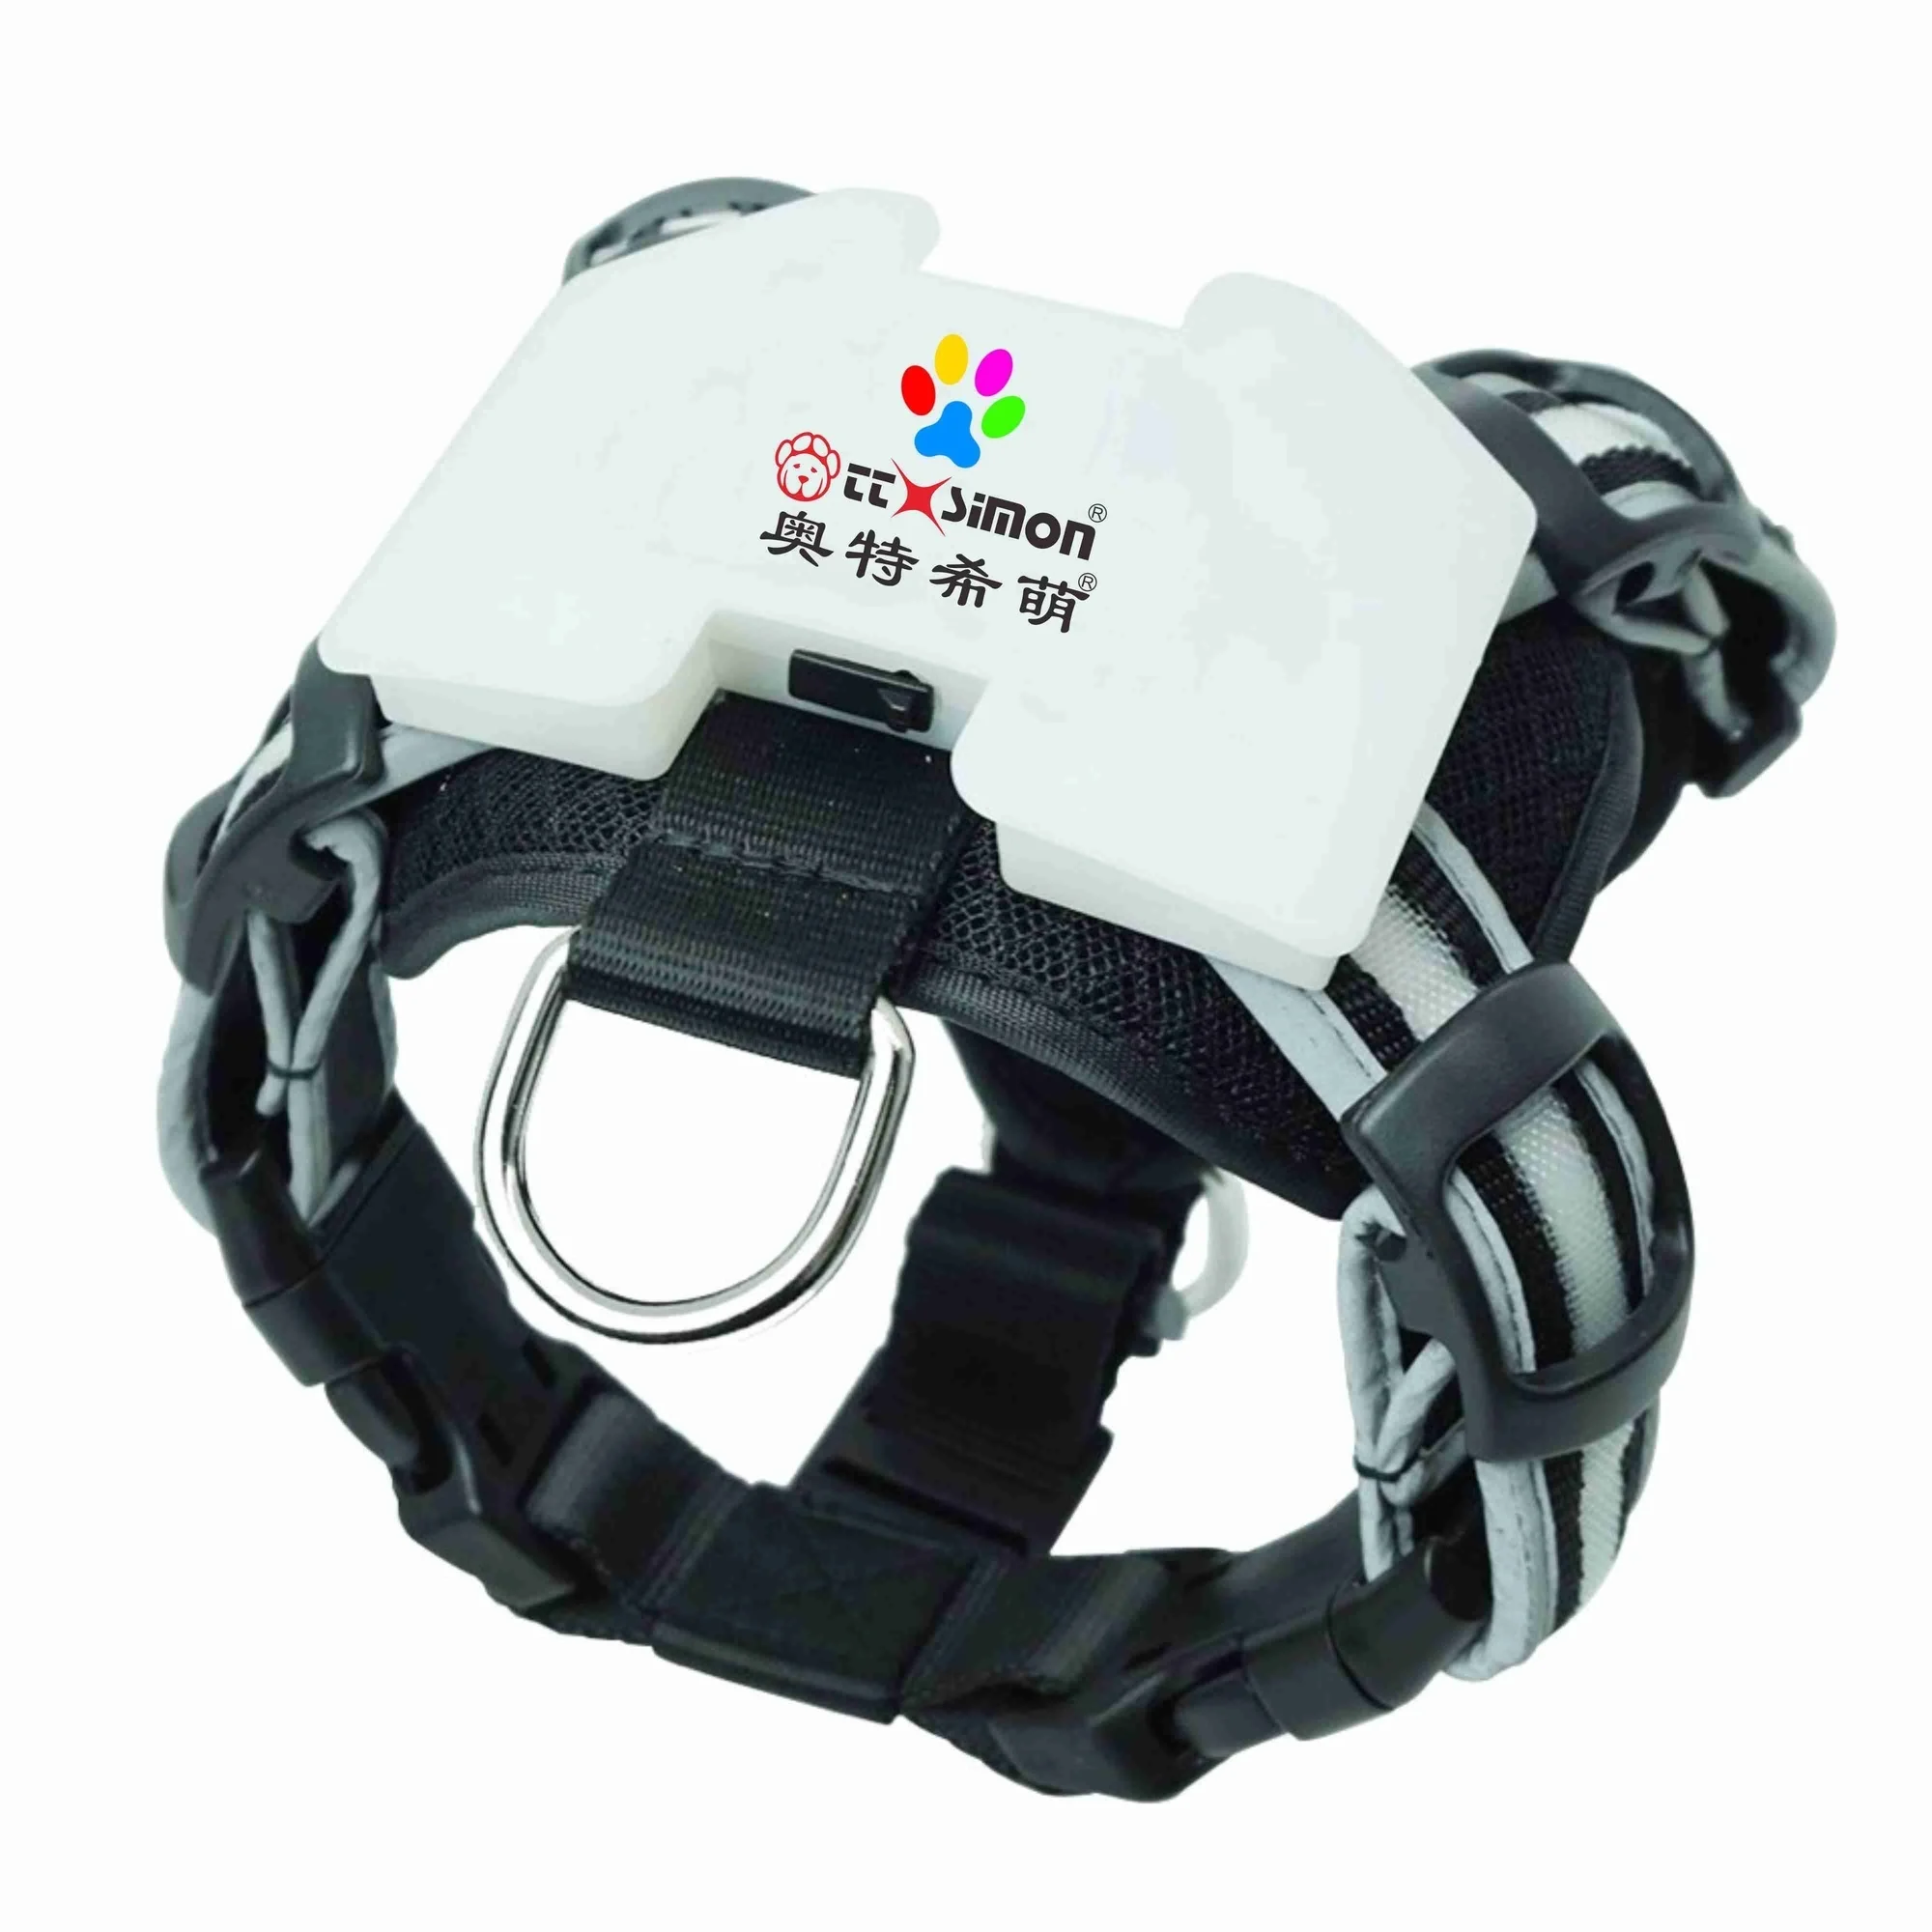 

Cc pets simon аксессуары перезаряжаемая светодиодная Подвеска для больших собак электрический ошейник для собак